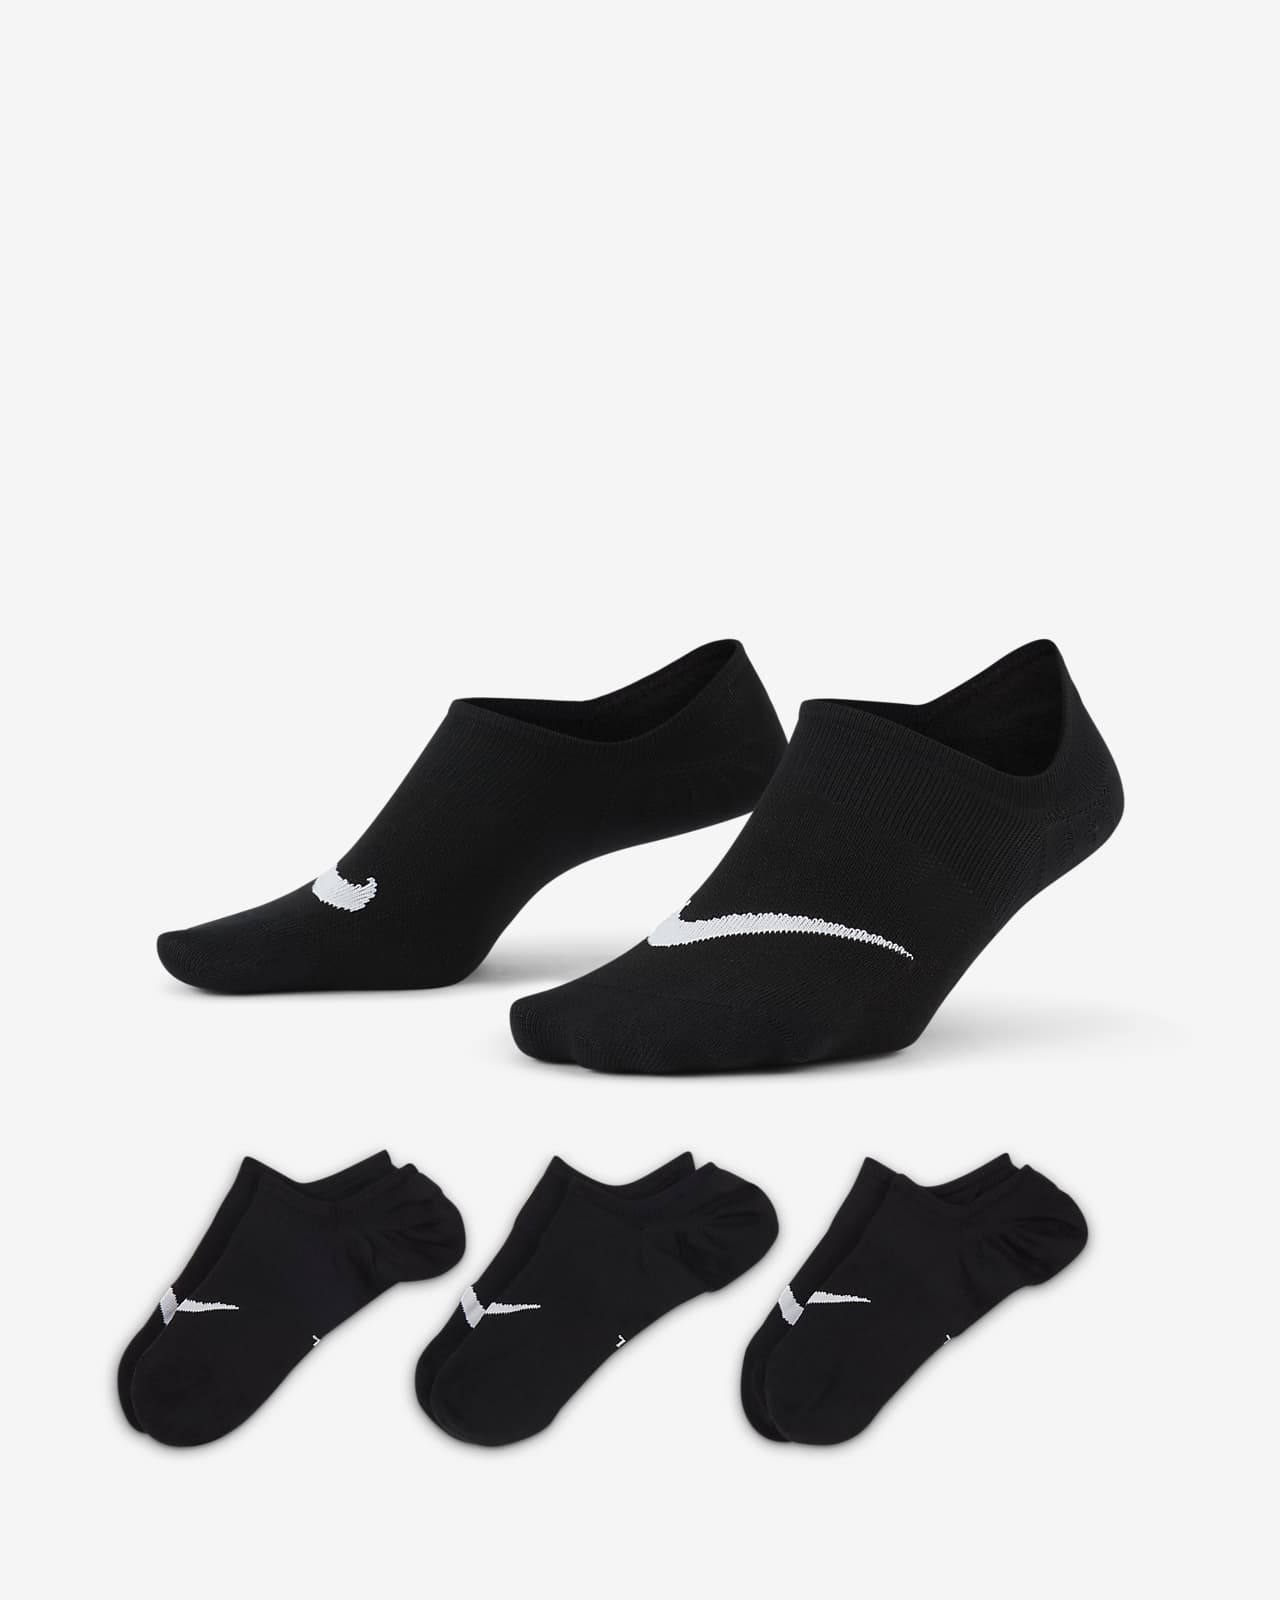 Chaussettes de training Nike Everyday Plus Lightweight pour Femme (3 paires)